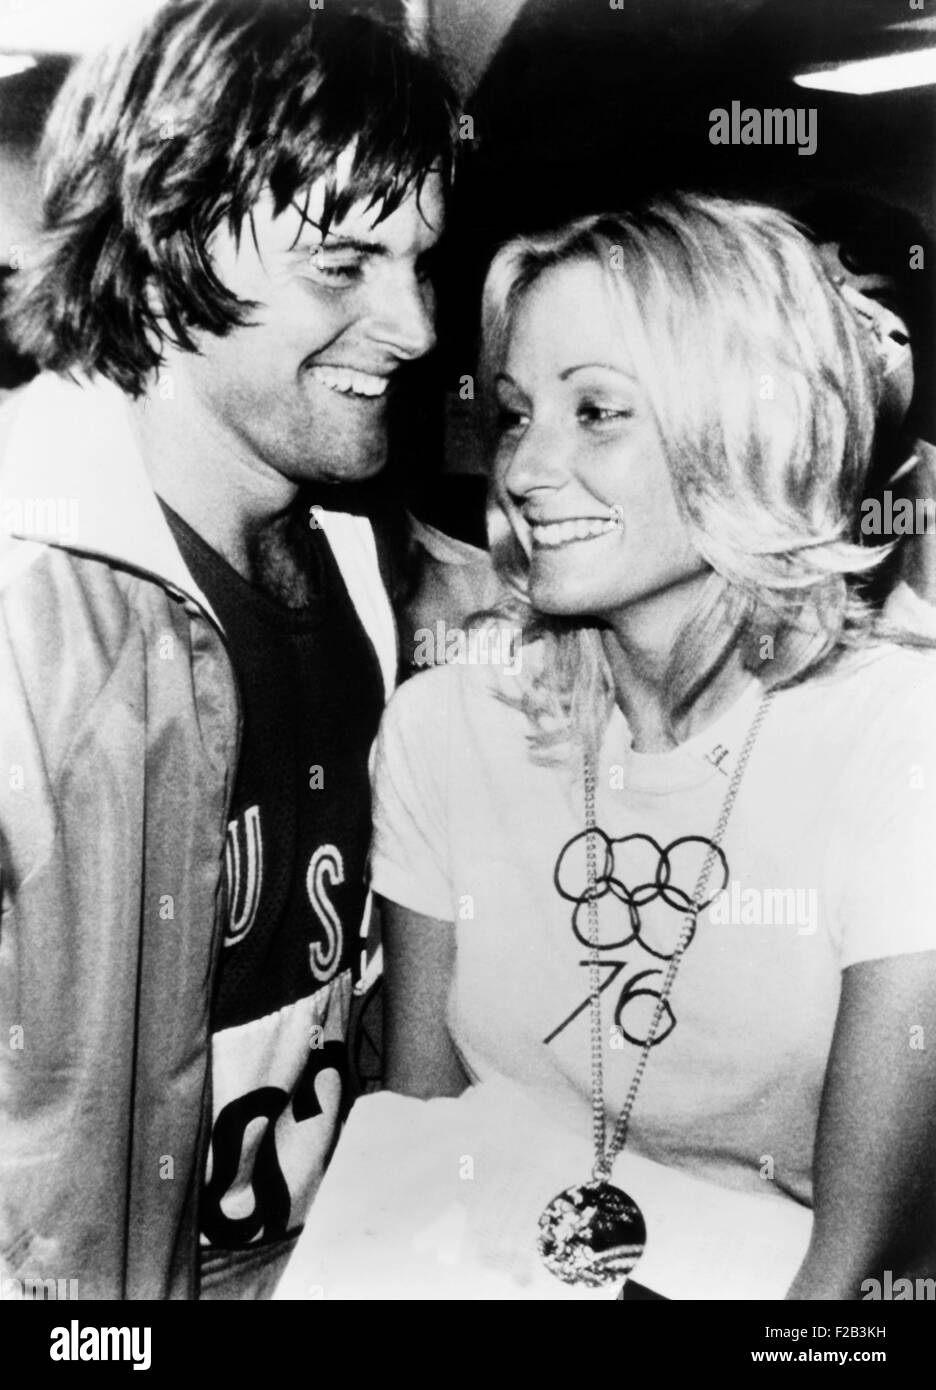 Bruce Jenner mit Frau Chrystie Crownover, seine olympische Goldmedaille trägt. Wenige Monate zuvor gewann er im Zehnkampf bei den Olympischen Sommerspielen 1976 in Montreal. September 1976. -(CSU 2015 5 84) Stockfoto